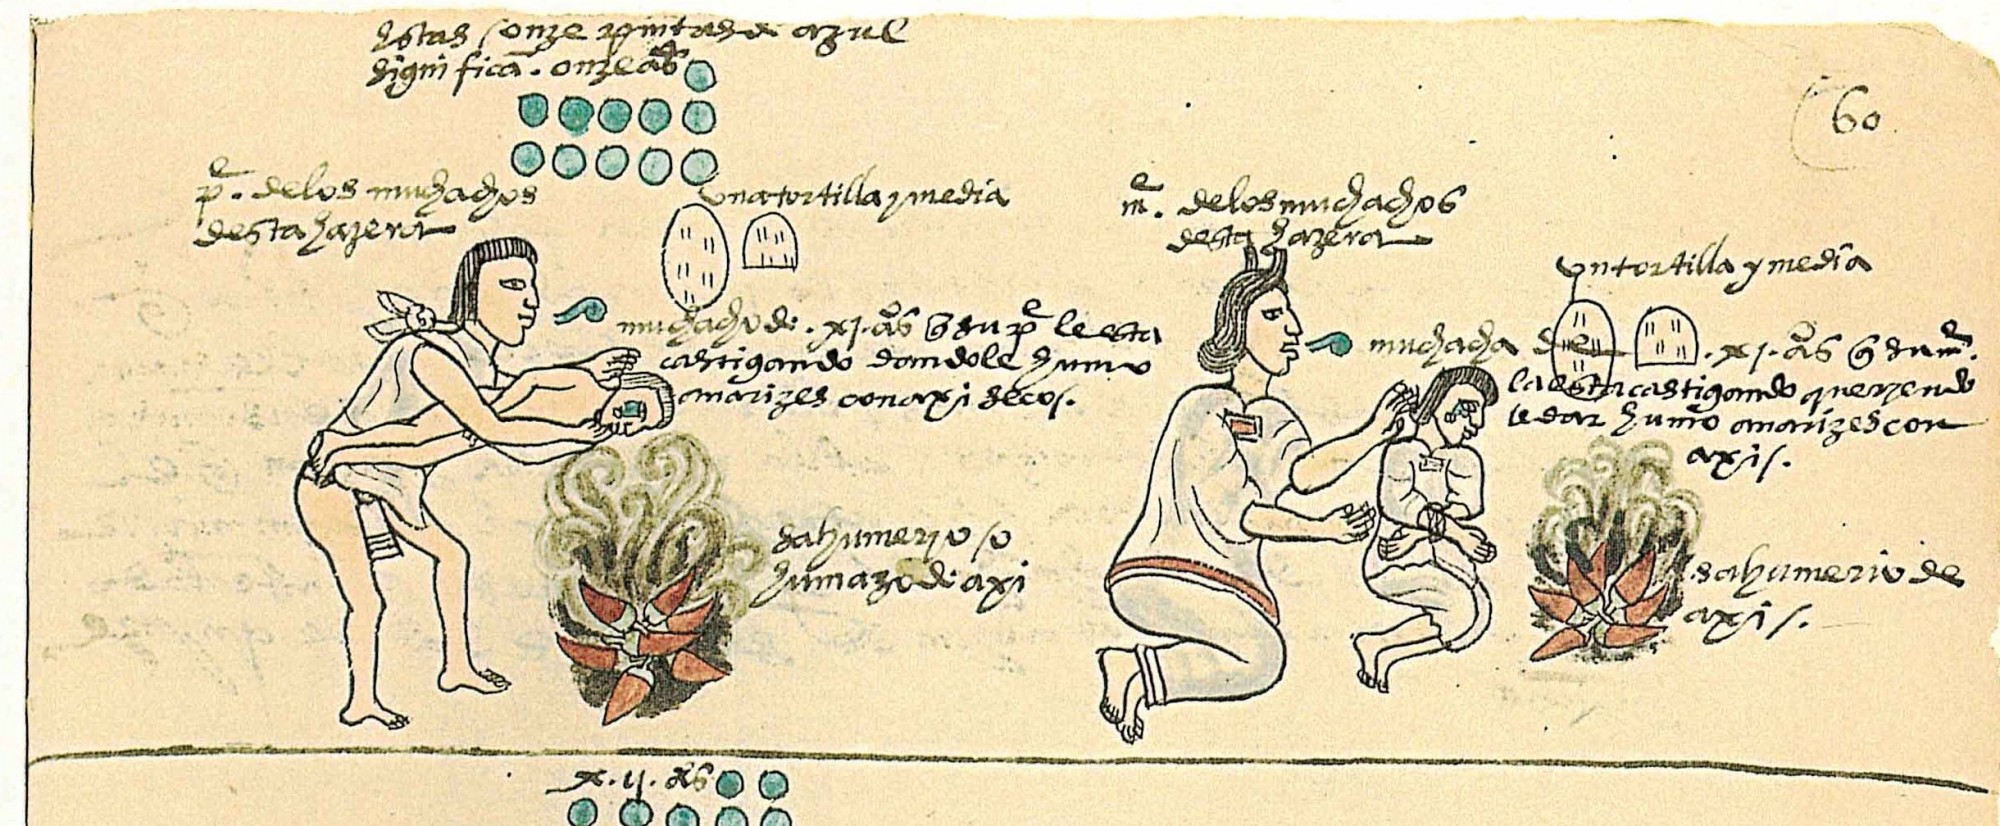 Codex Mendocino - zdroj: http://upload.wikimedia.org/wikipedia/commons/6/60/Codex_Mendoza_folio_60r.jpg